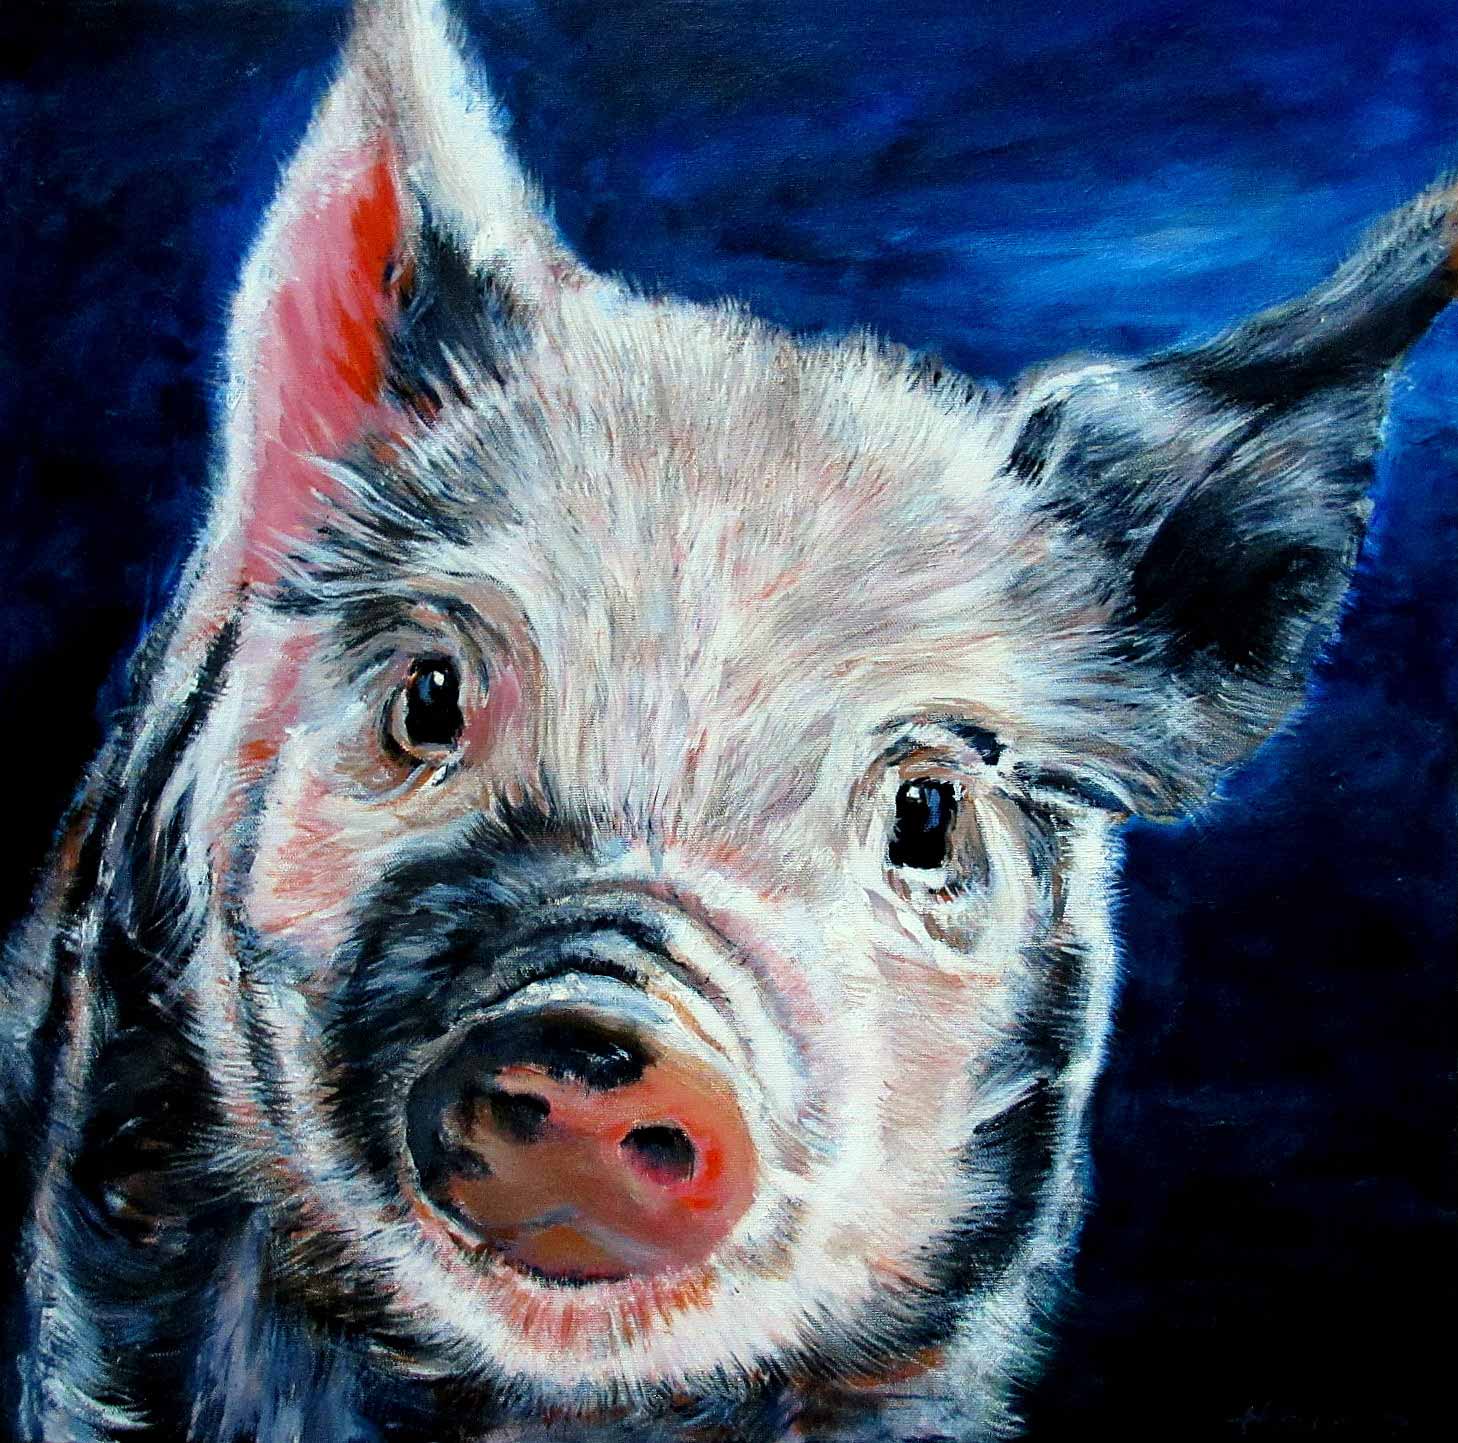 "Pig", 12x12